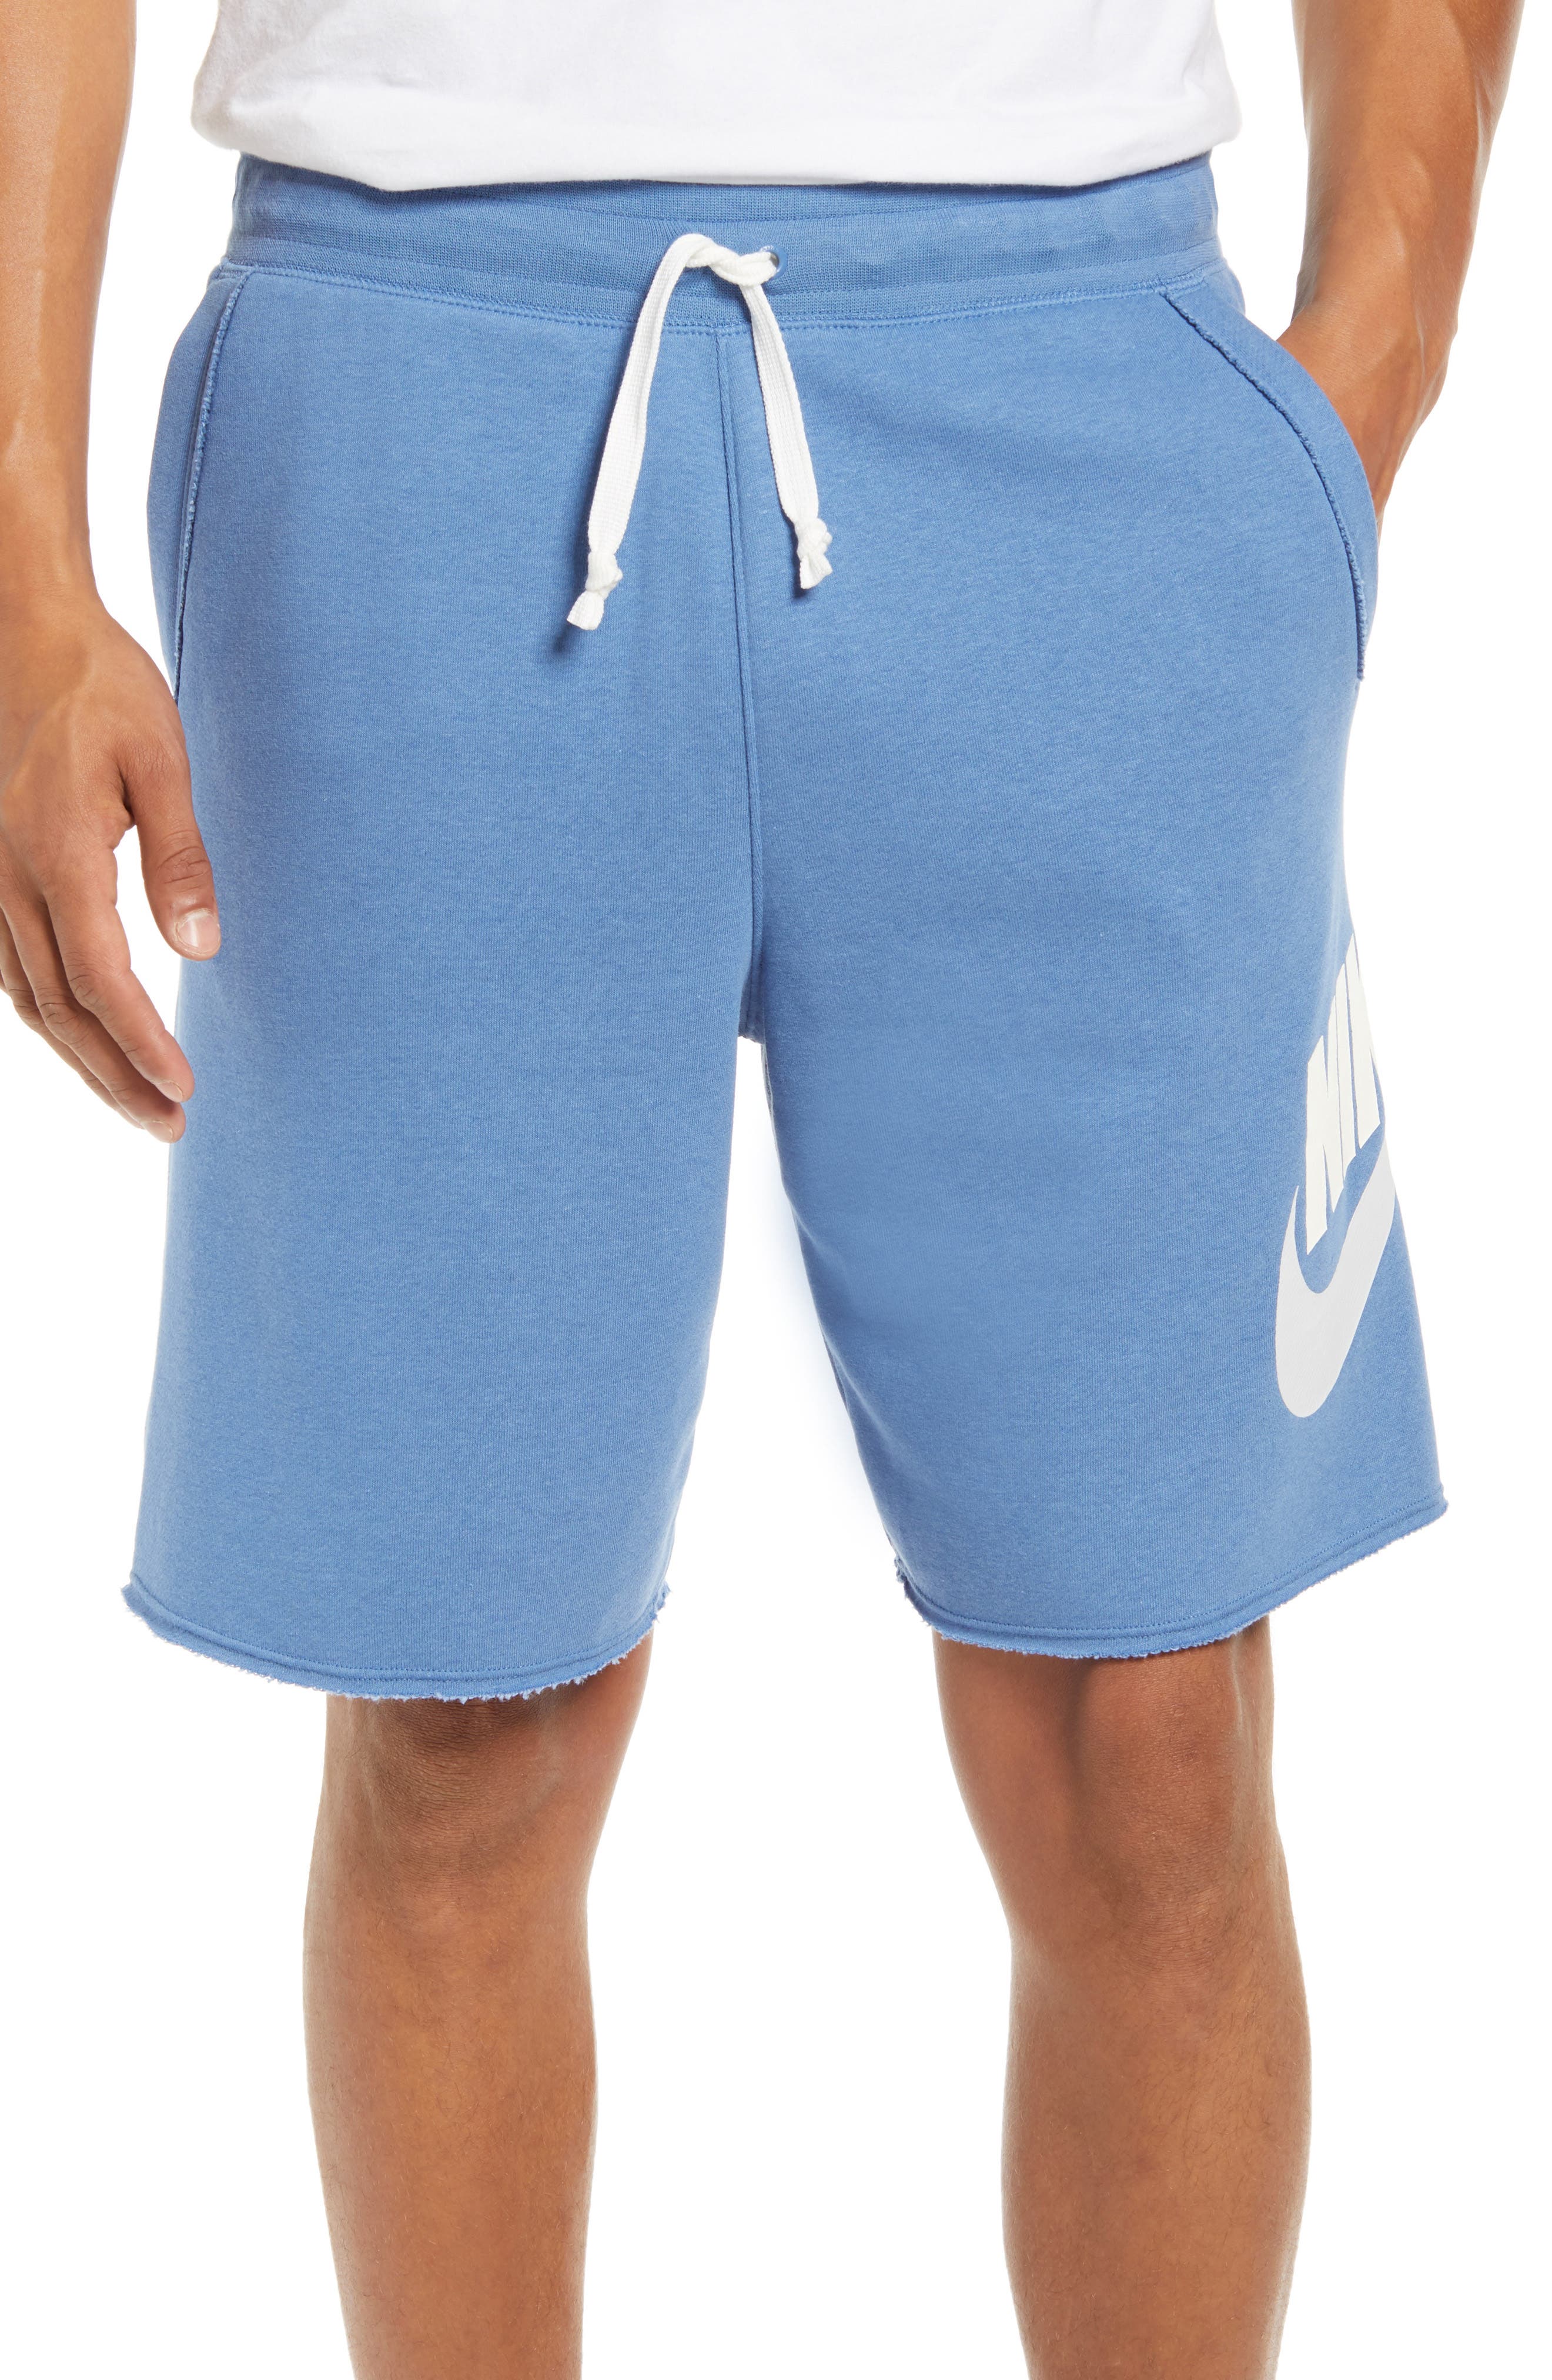 light blue nike shorts